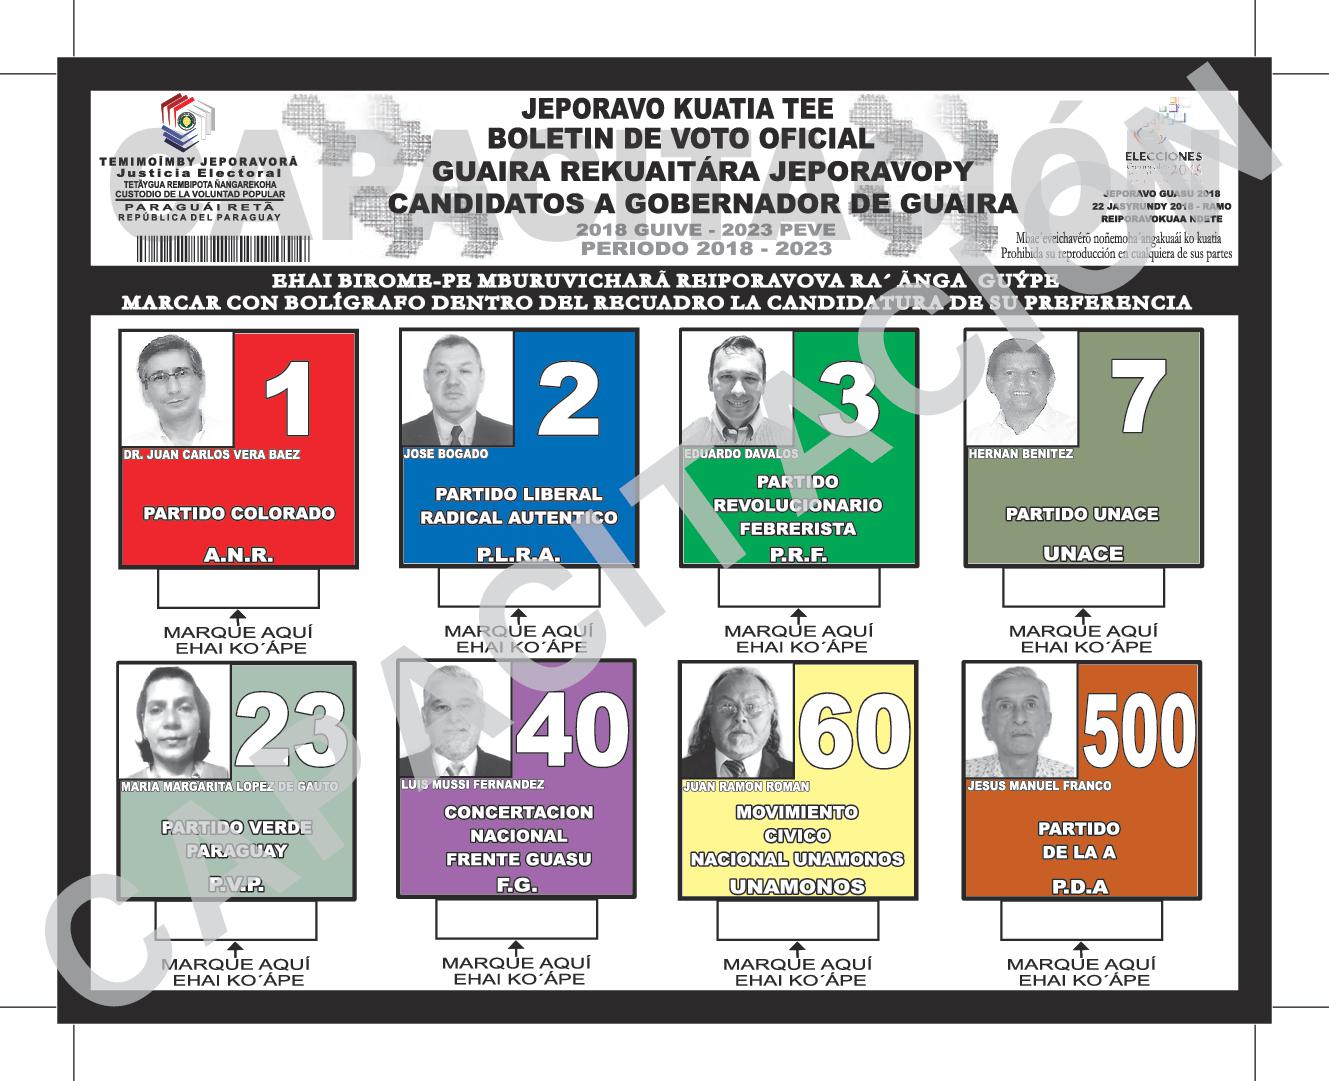 Boletin de voto de candidatos a GOBERNADOR de GUAIRA